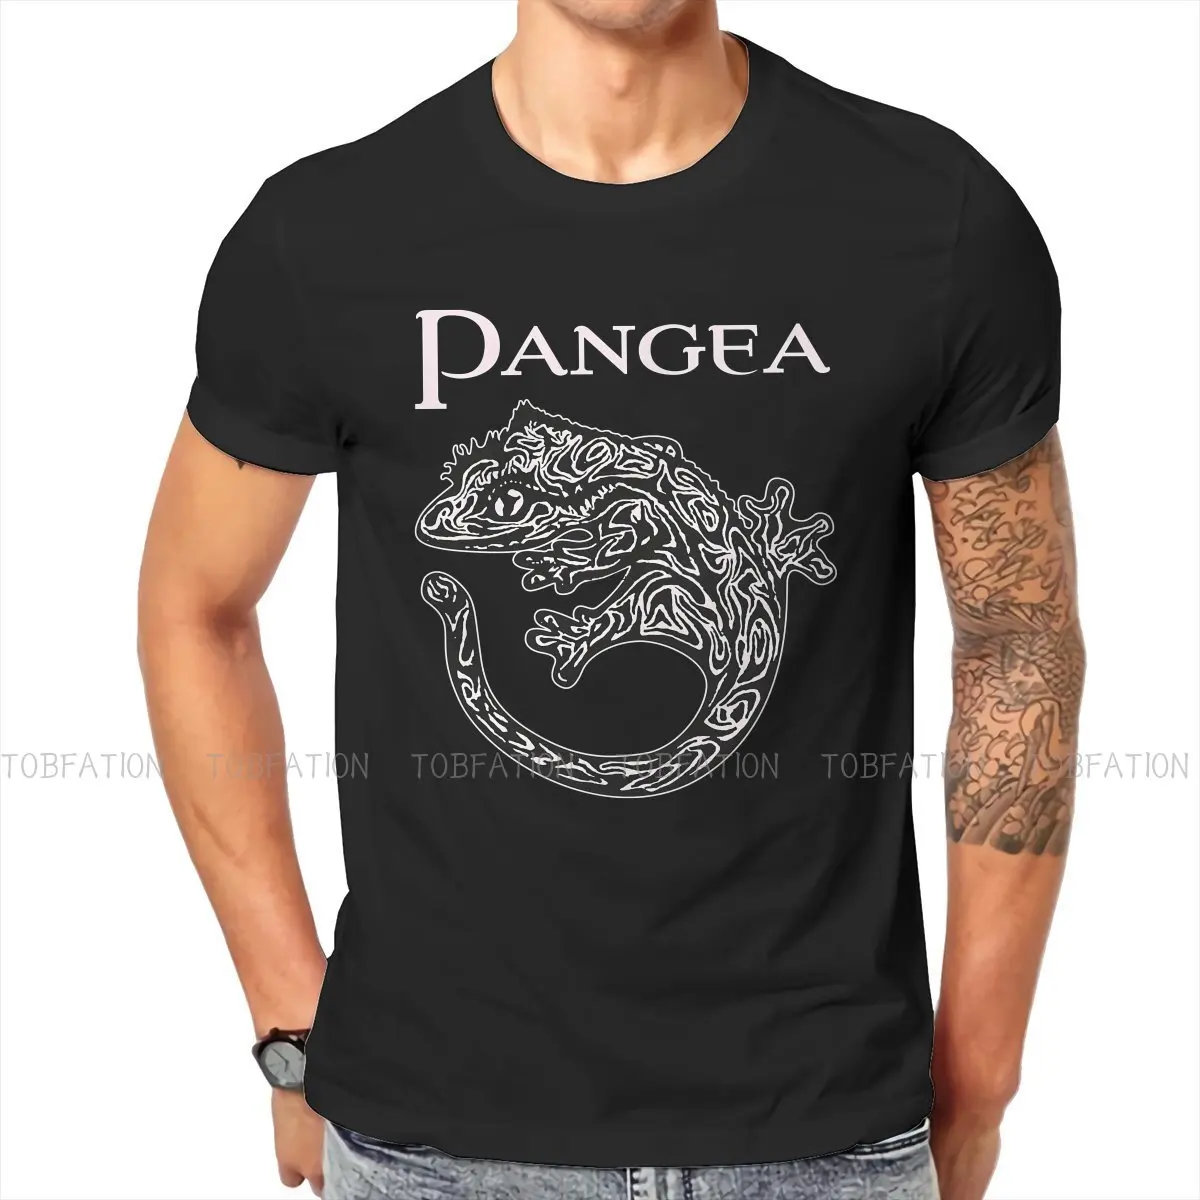 Gecko Lover Original TShirts Pangea Crested Print Men's T Shirt Hipster Tops 6XL